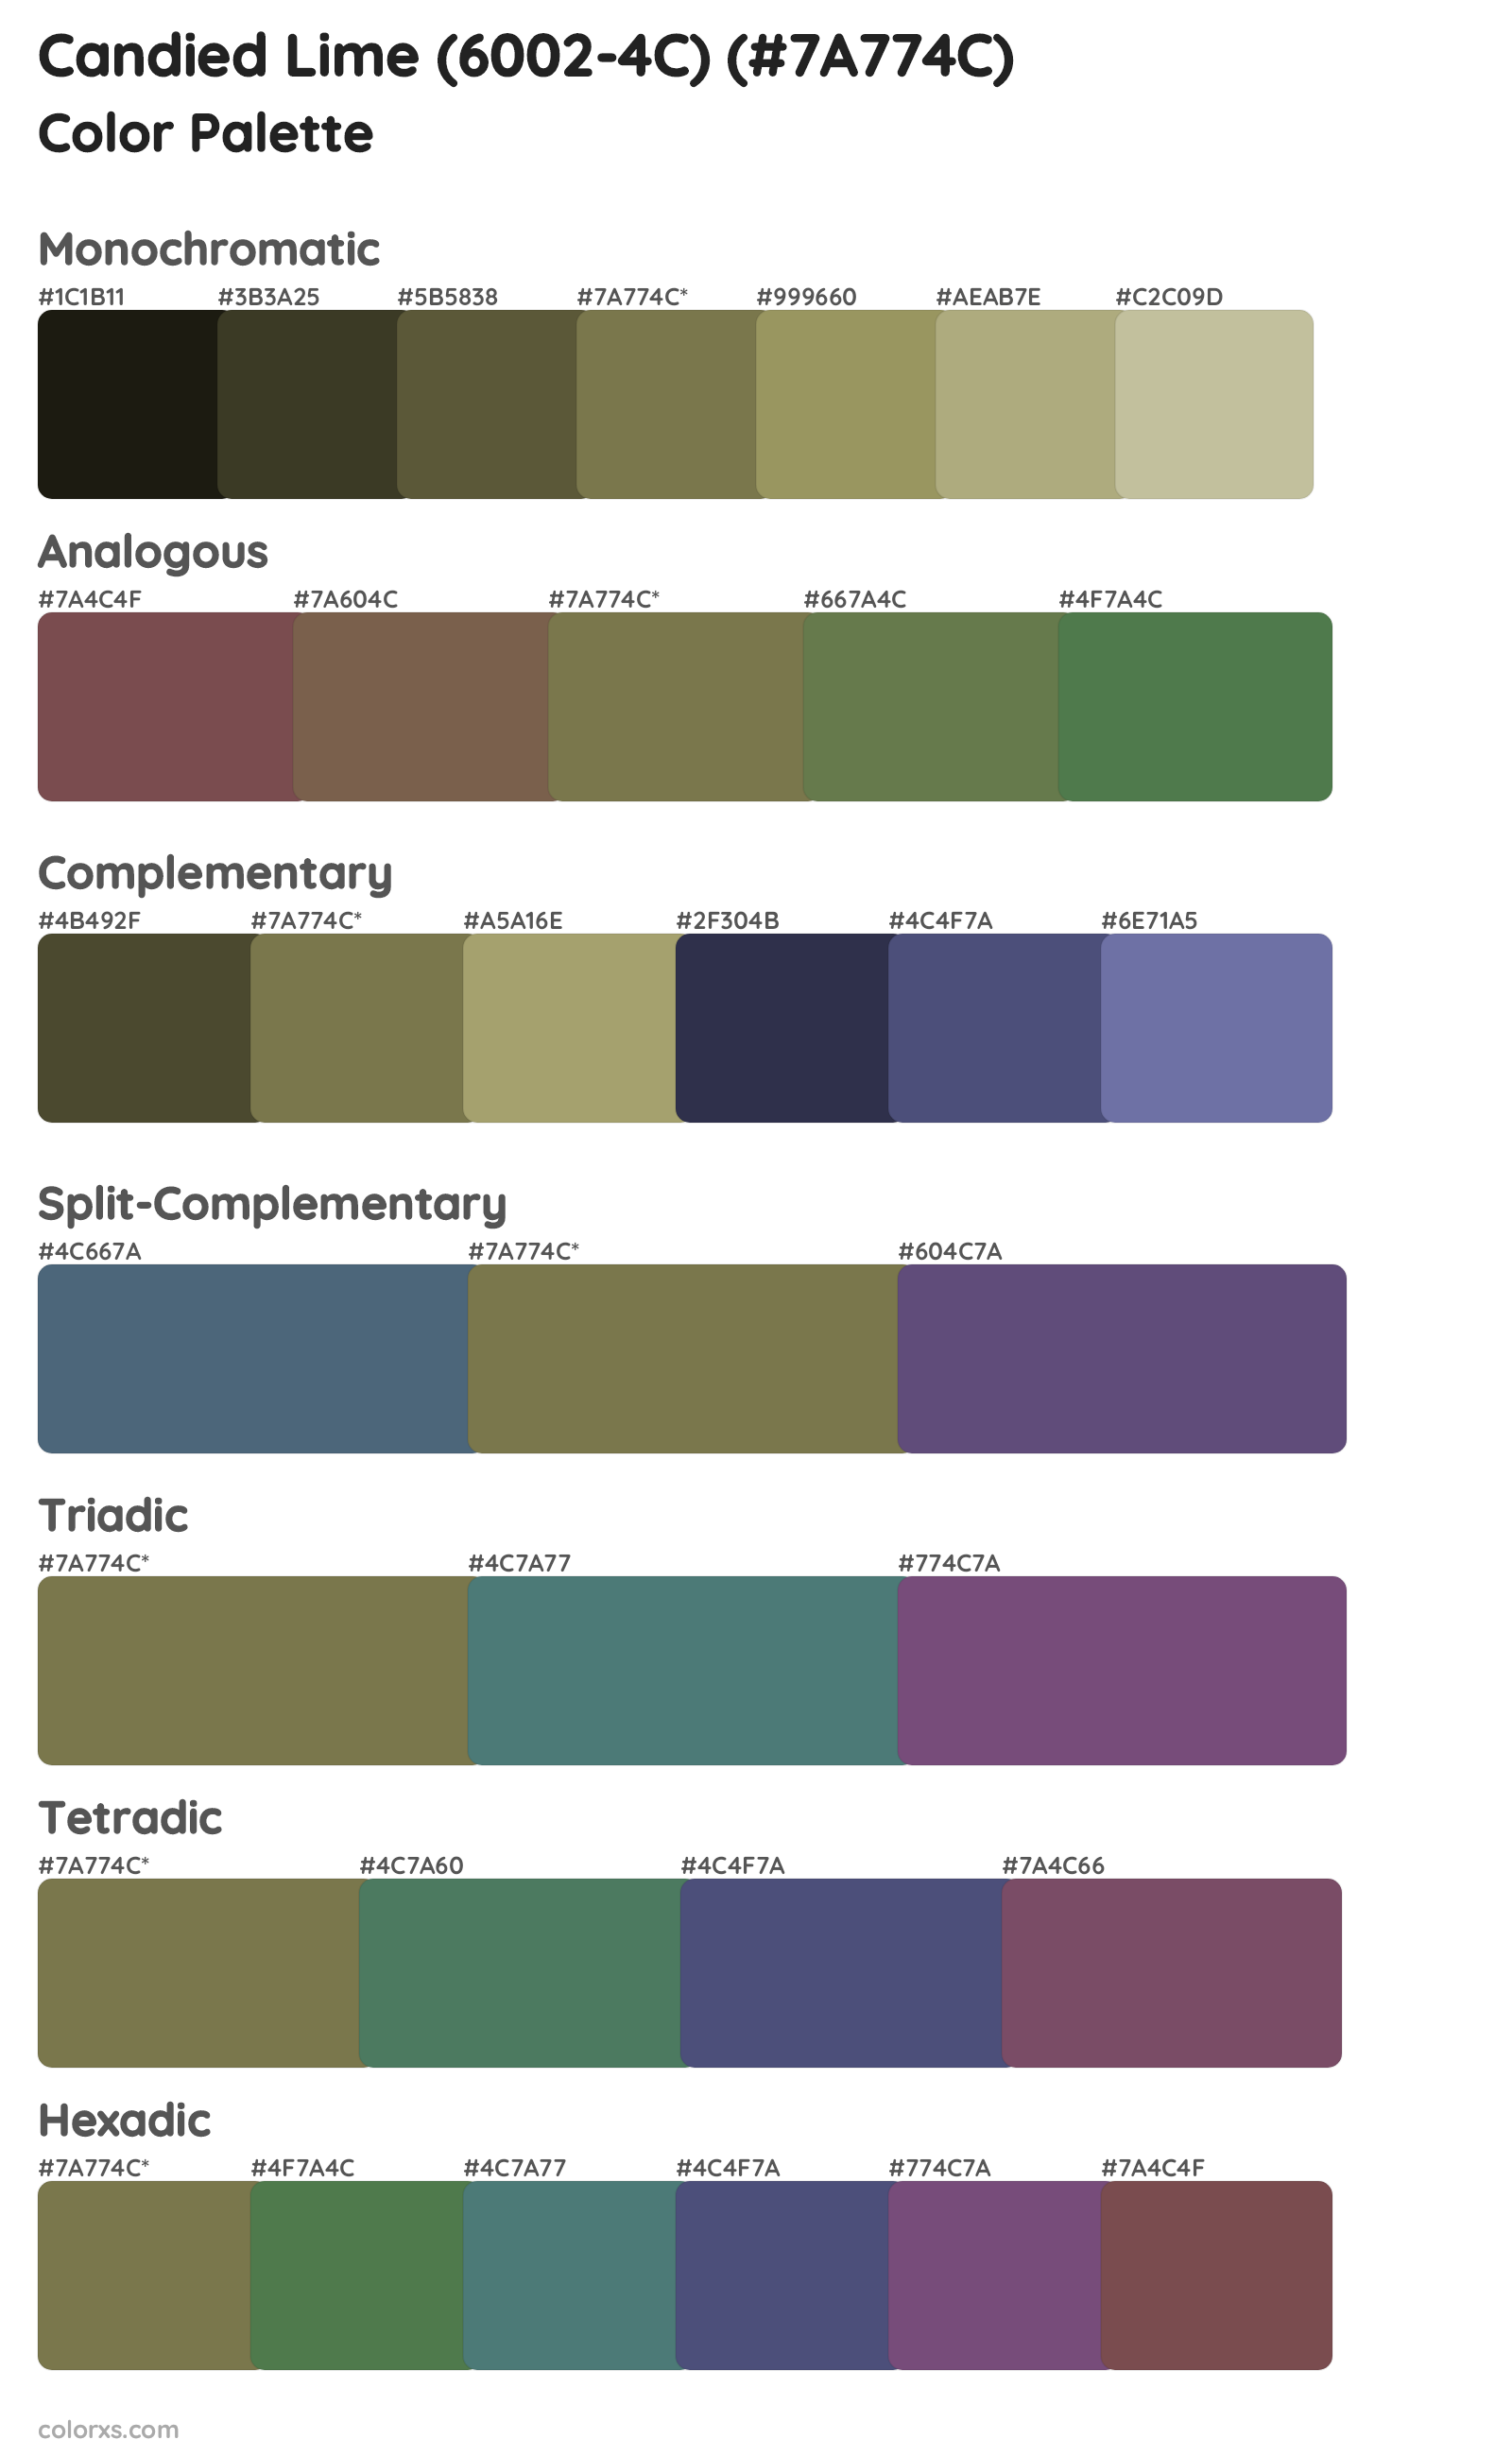 Candied Lime (6002-4C) Color Scheme Palettes